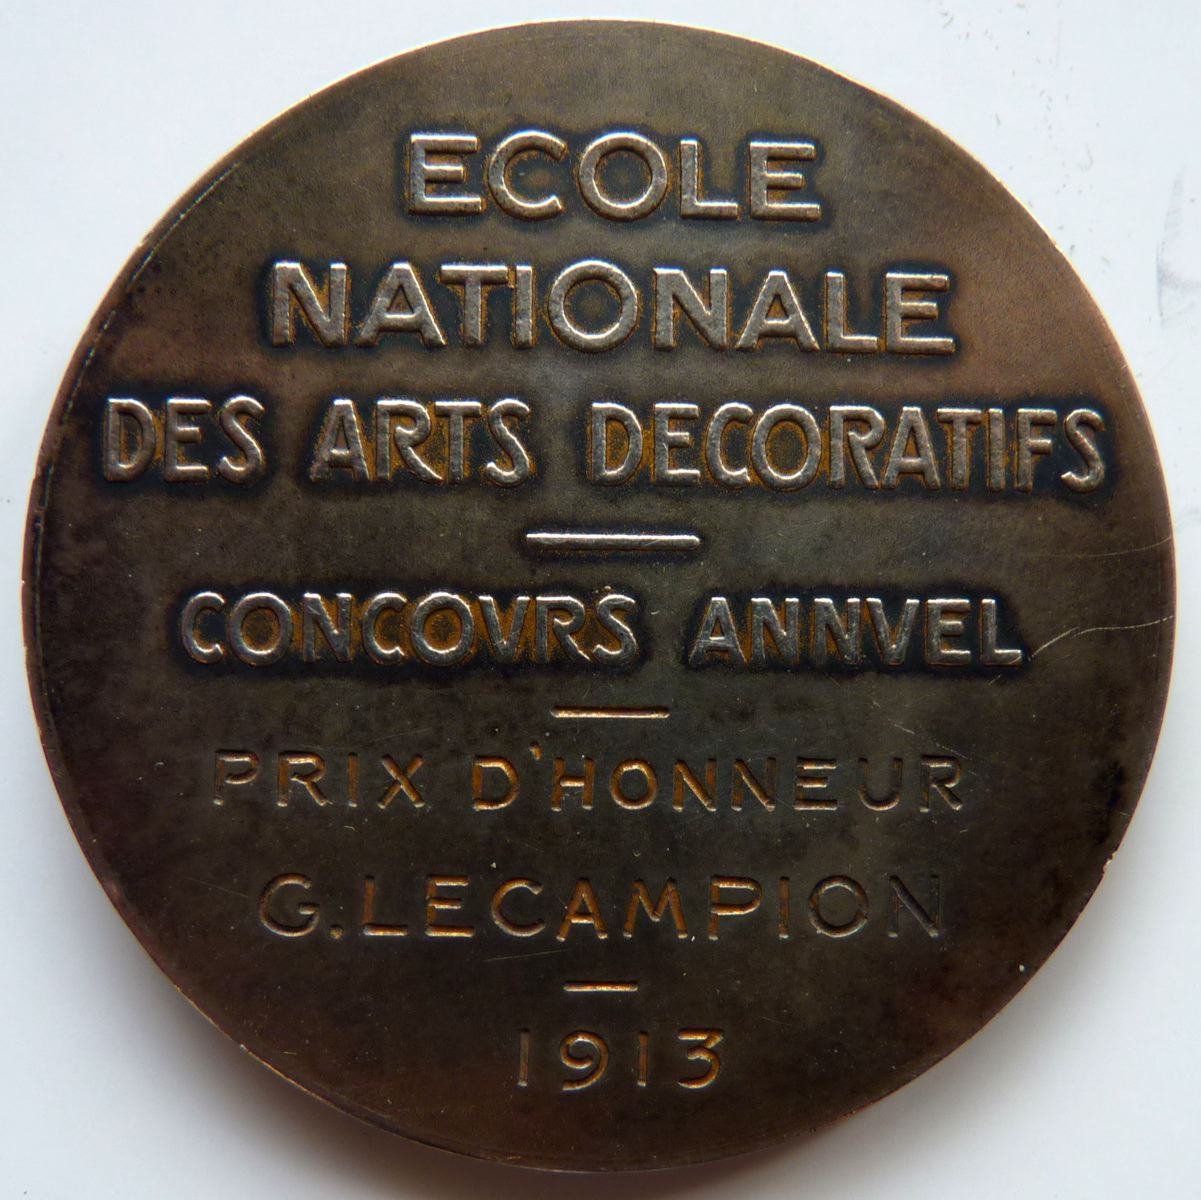 Ecole Nationale des Arts décoratifs - Concours annuel - Prix d'honneur G. Lecampion - 1913